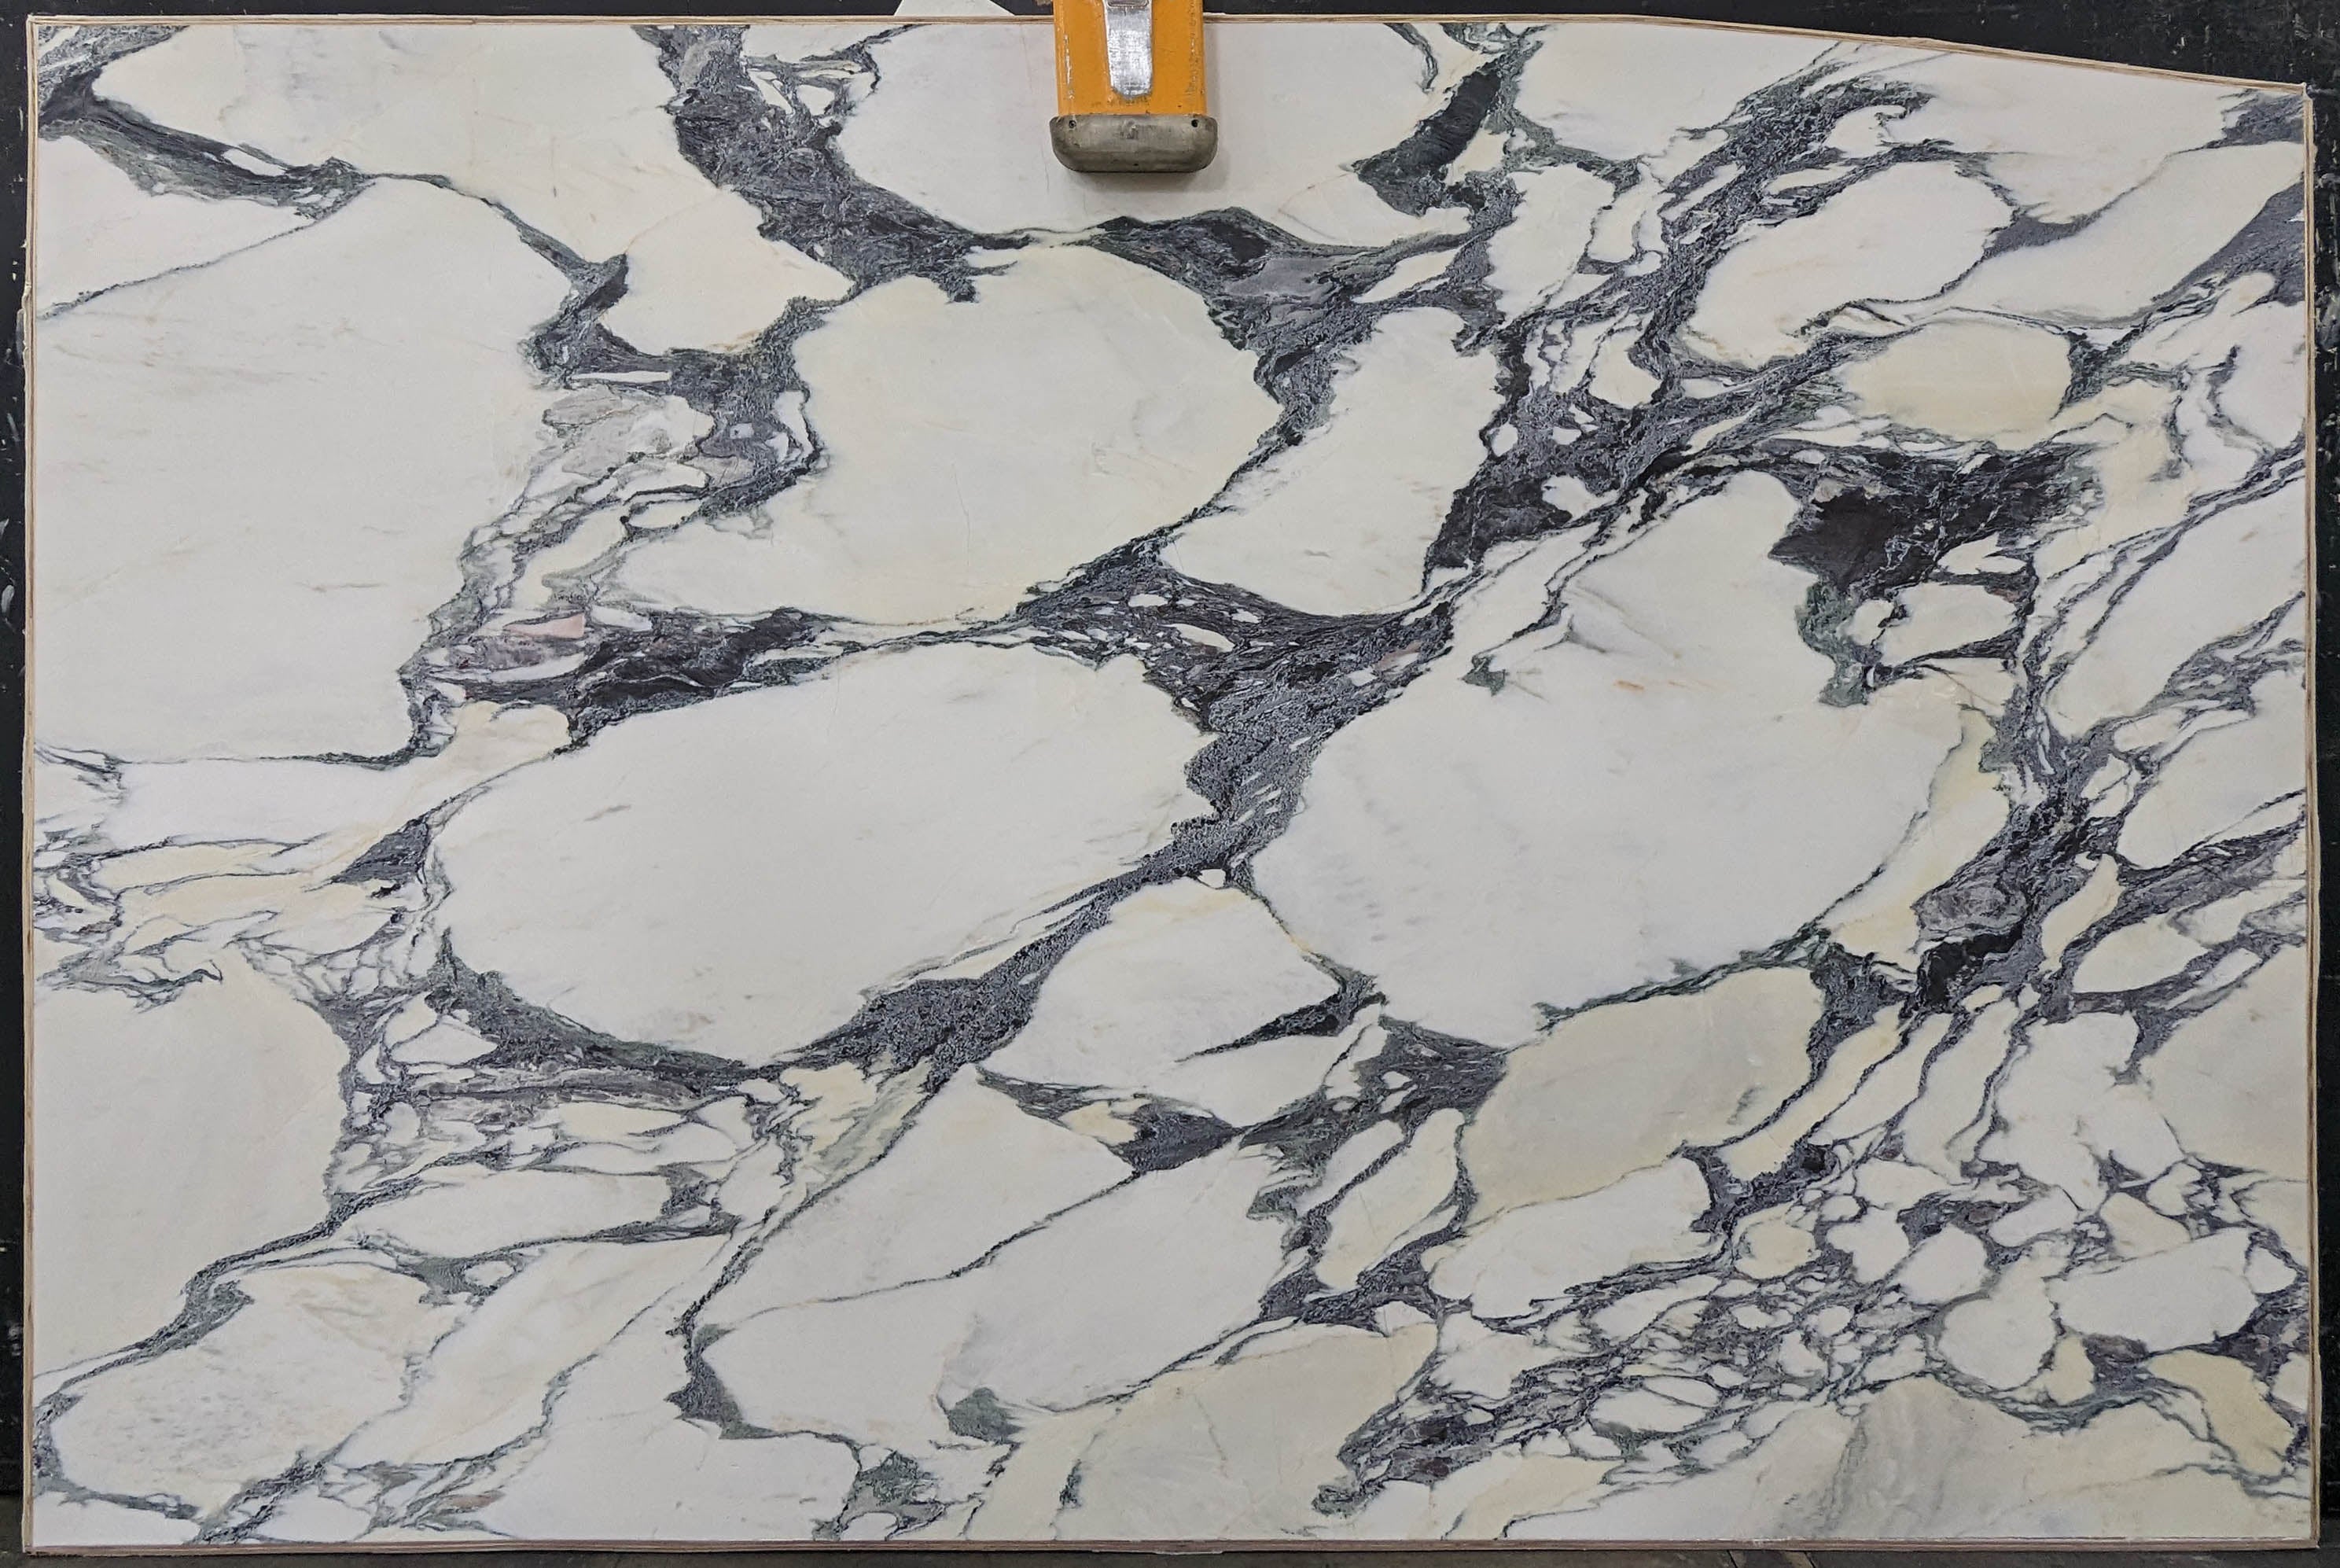  Calacatta Viola Marble Slab 3/4 - 13737A#55 -  74x116 